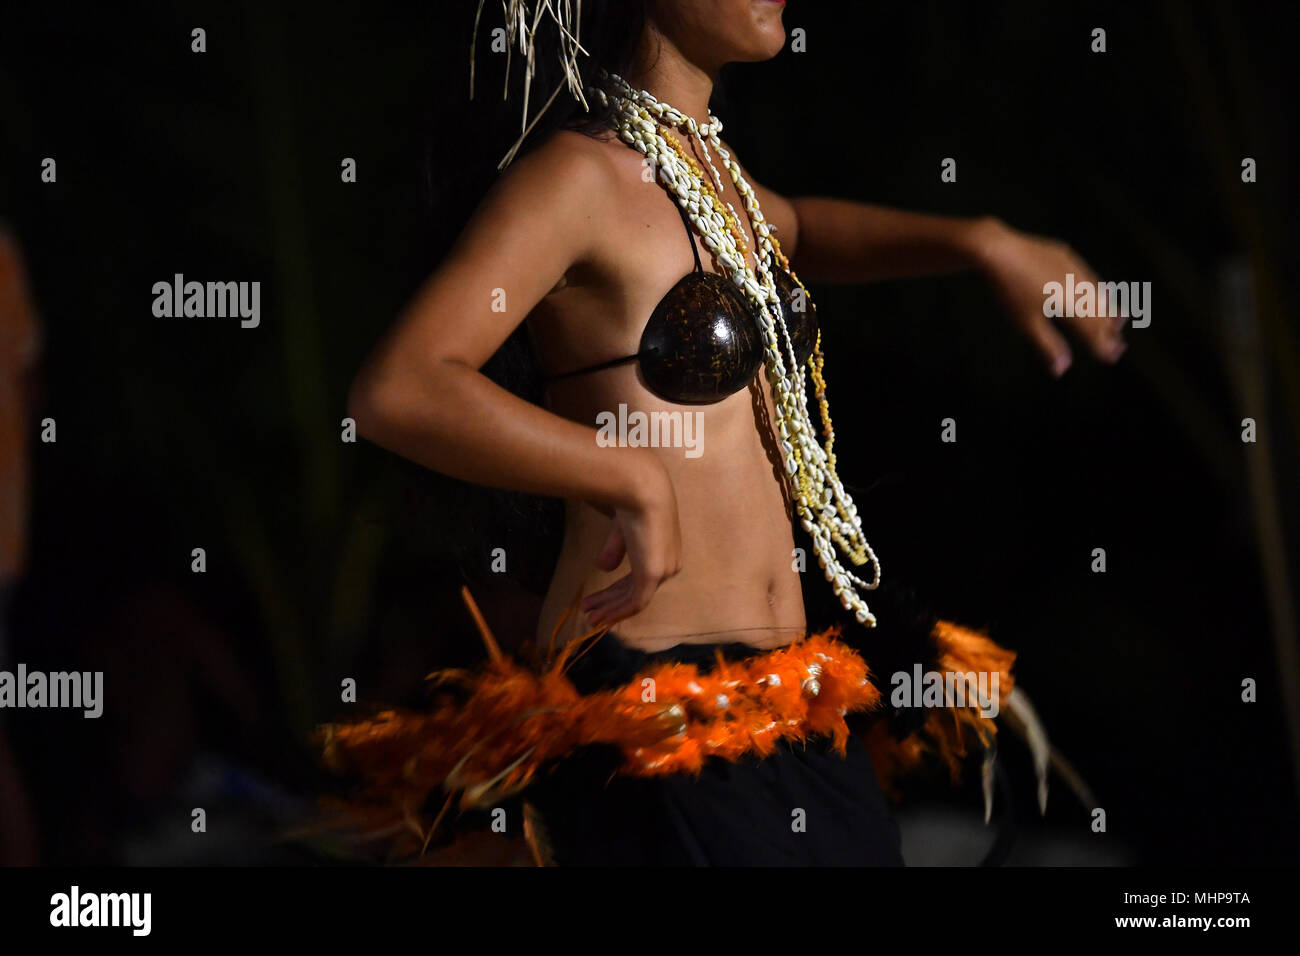 Polynesia dance immagini e fotografie stock ad alta risoluzione - Alamy